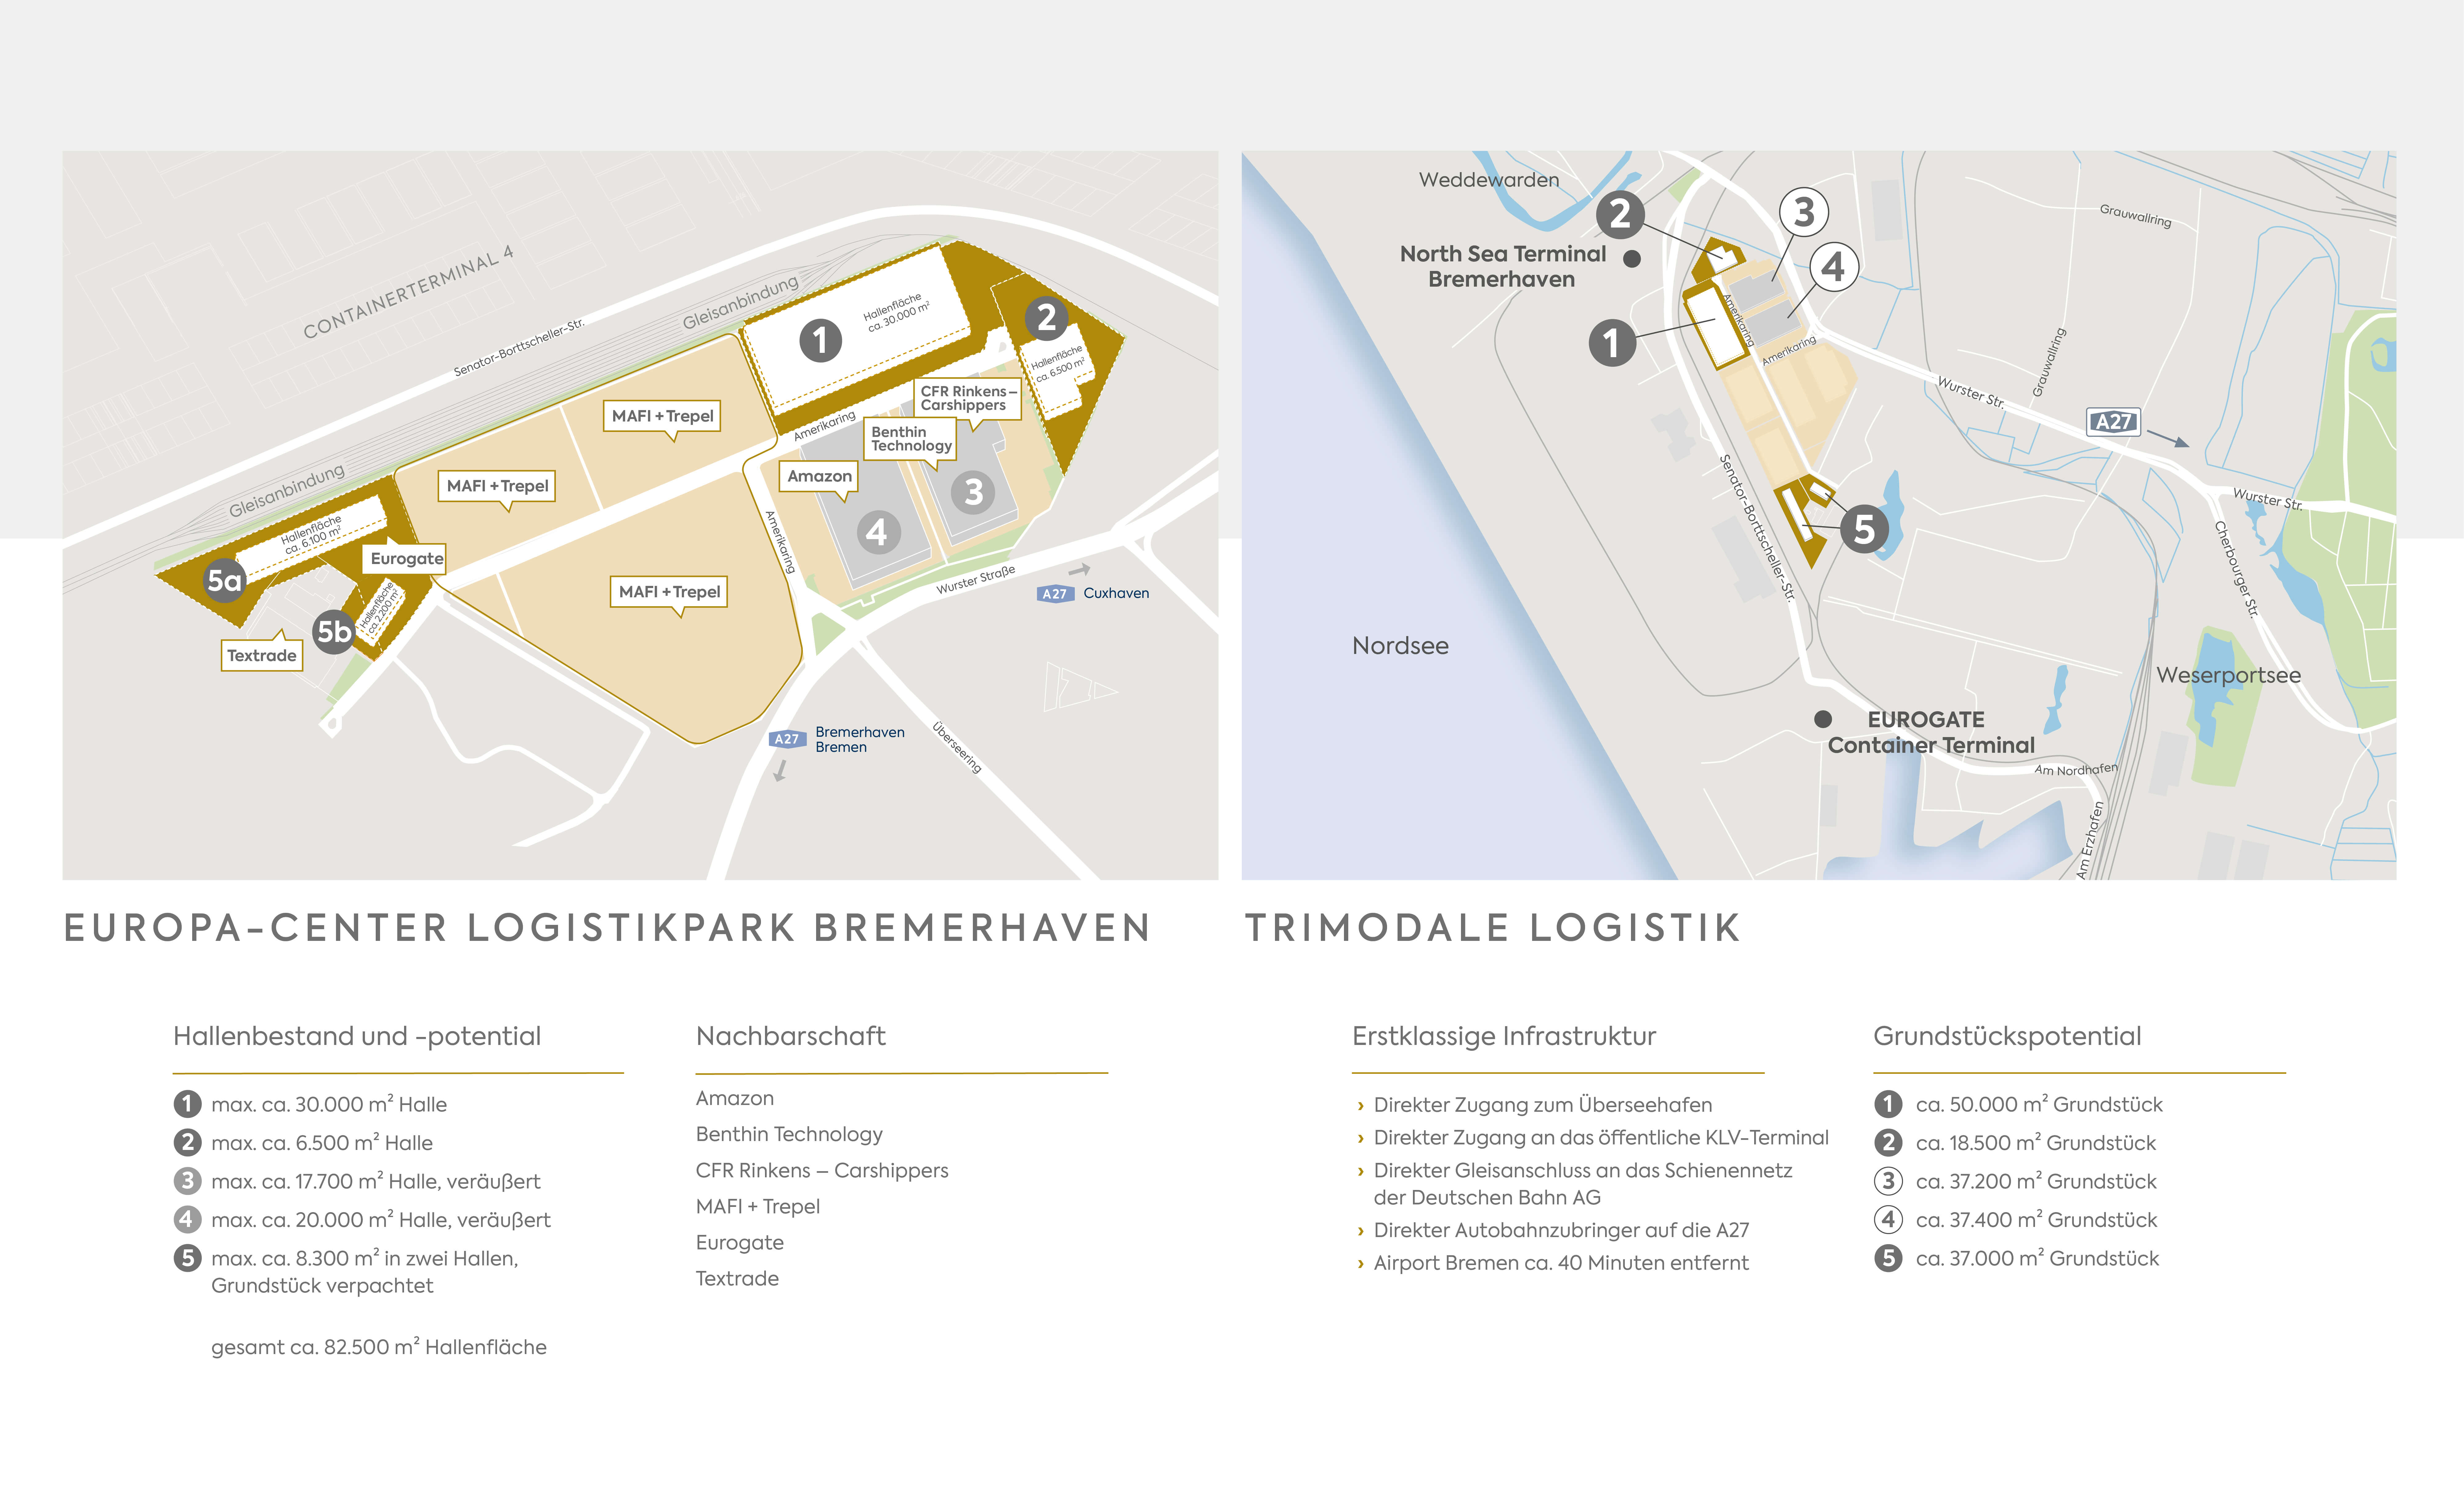 Übersichtsplan/Lageplan vom EUROPA-CENTER Logistikpark Bremerhaven